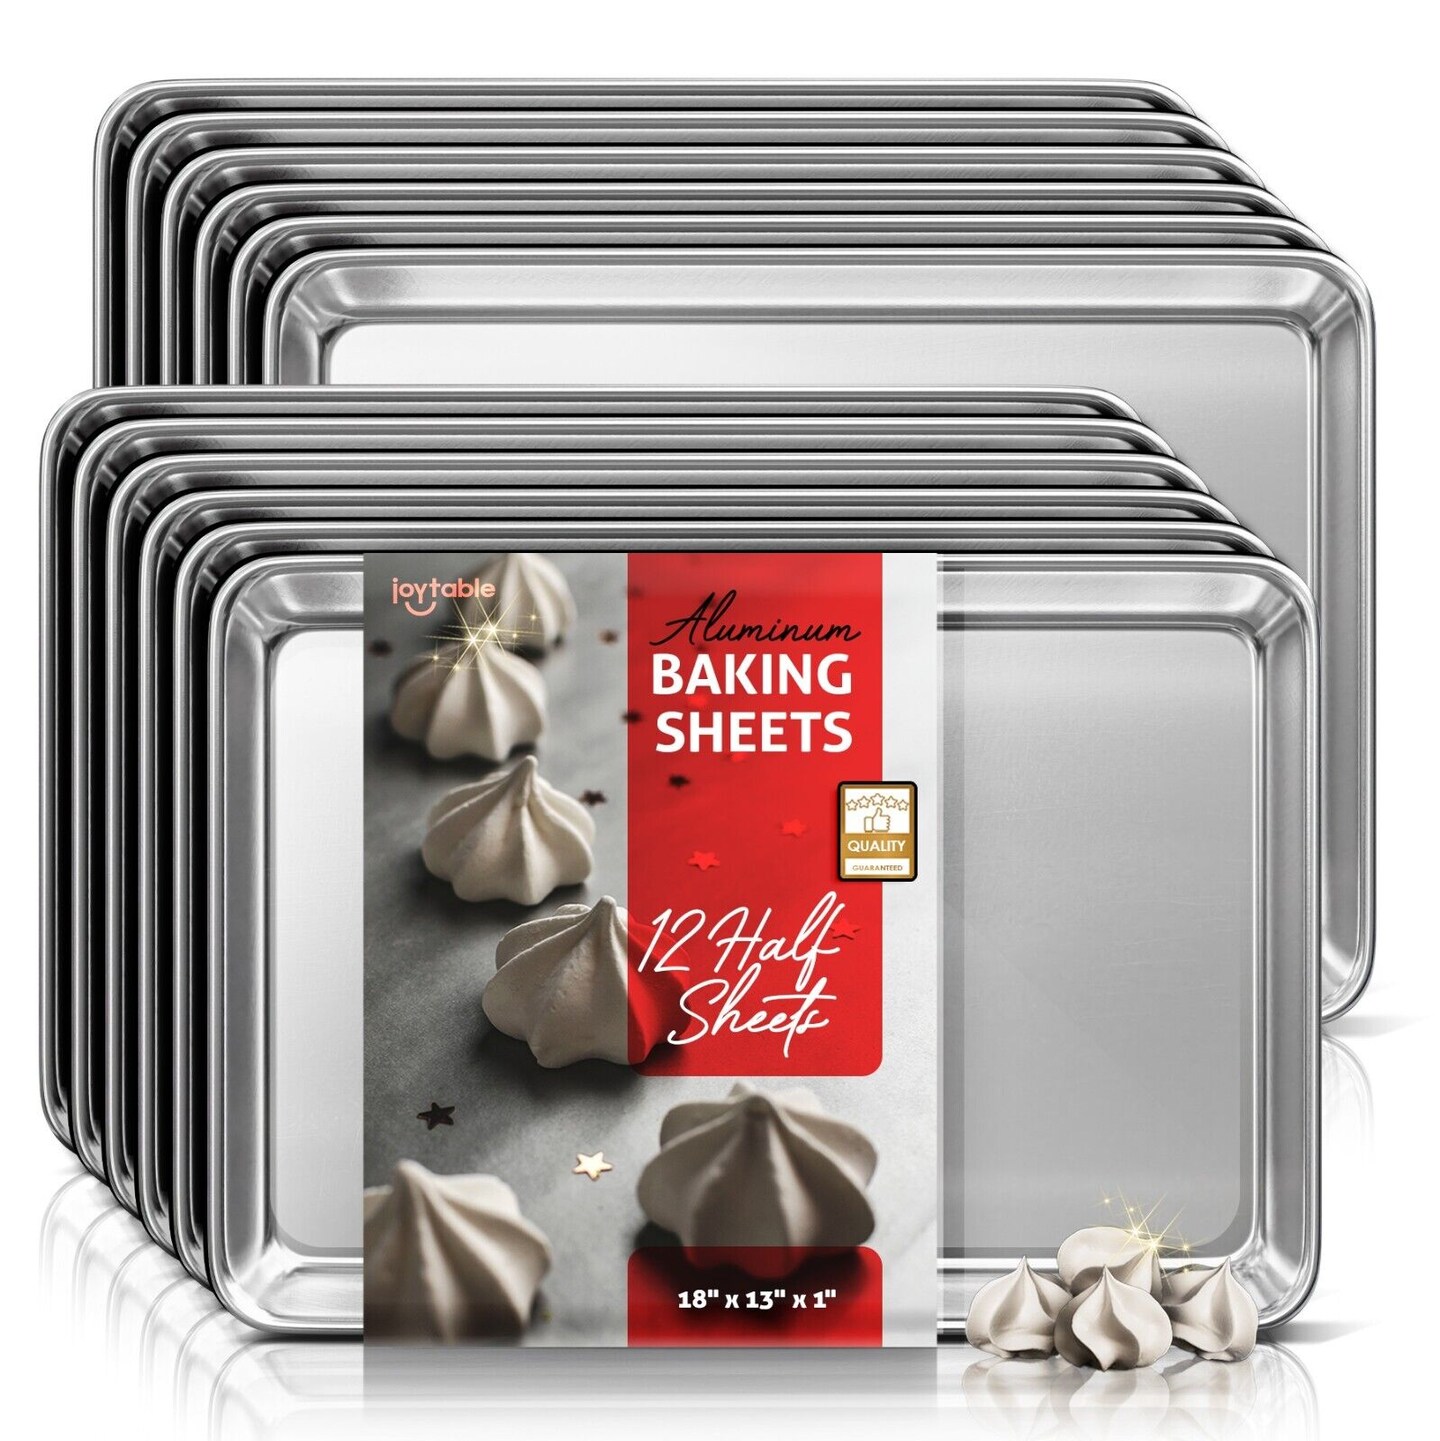 Joytable Nonstick Aluminum Baking Sheets 6 packs